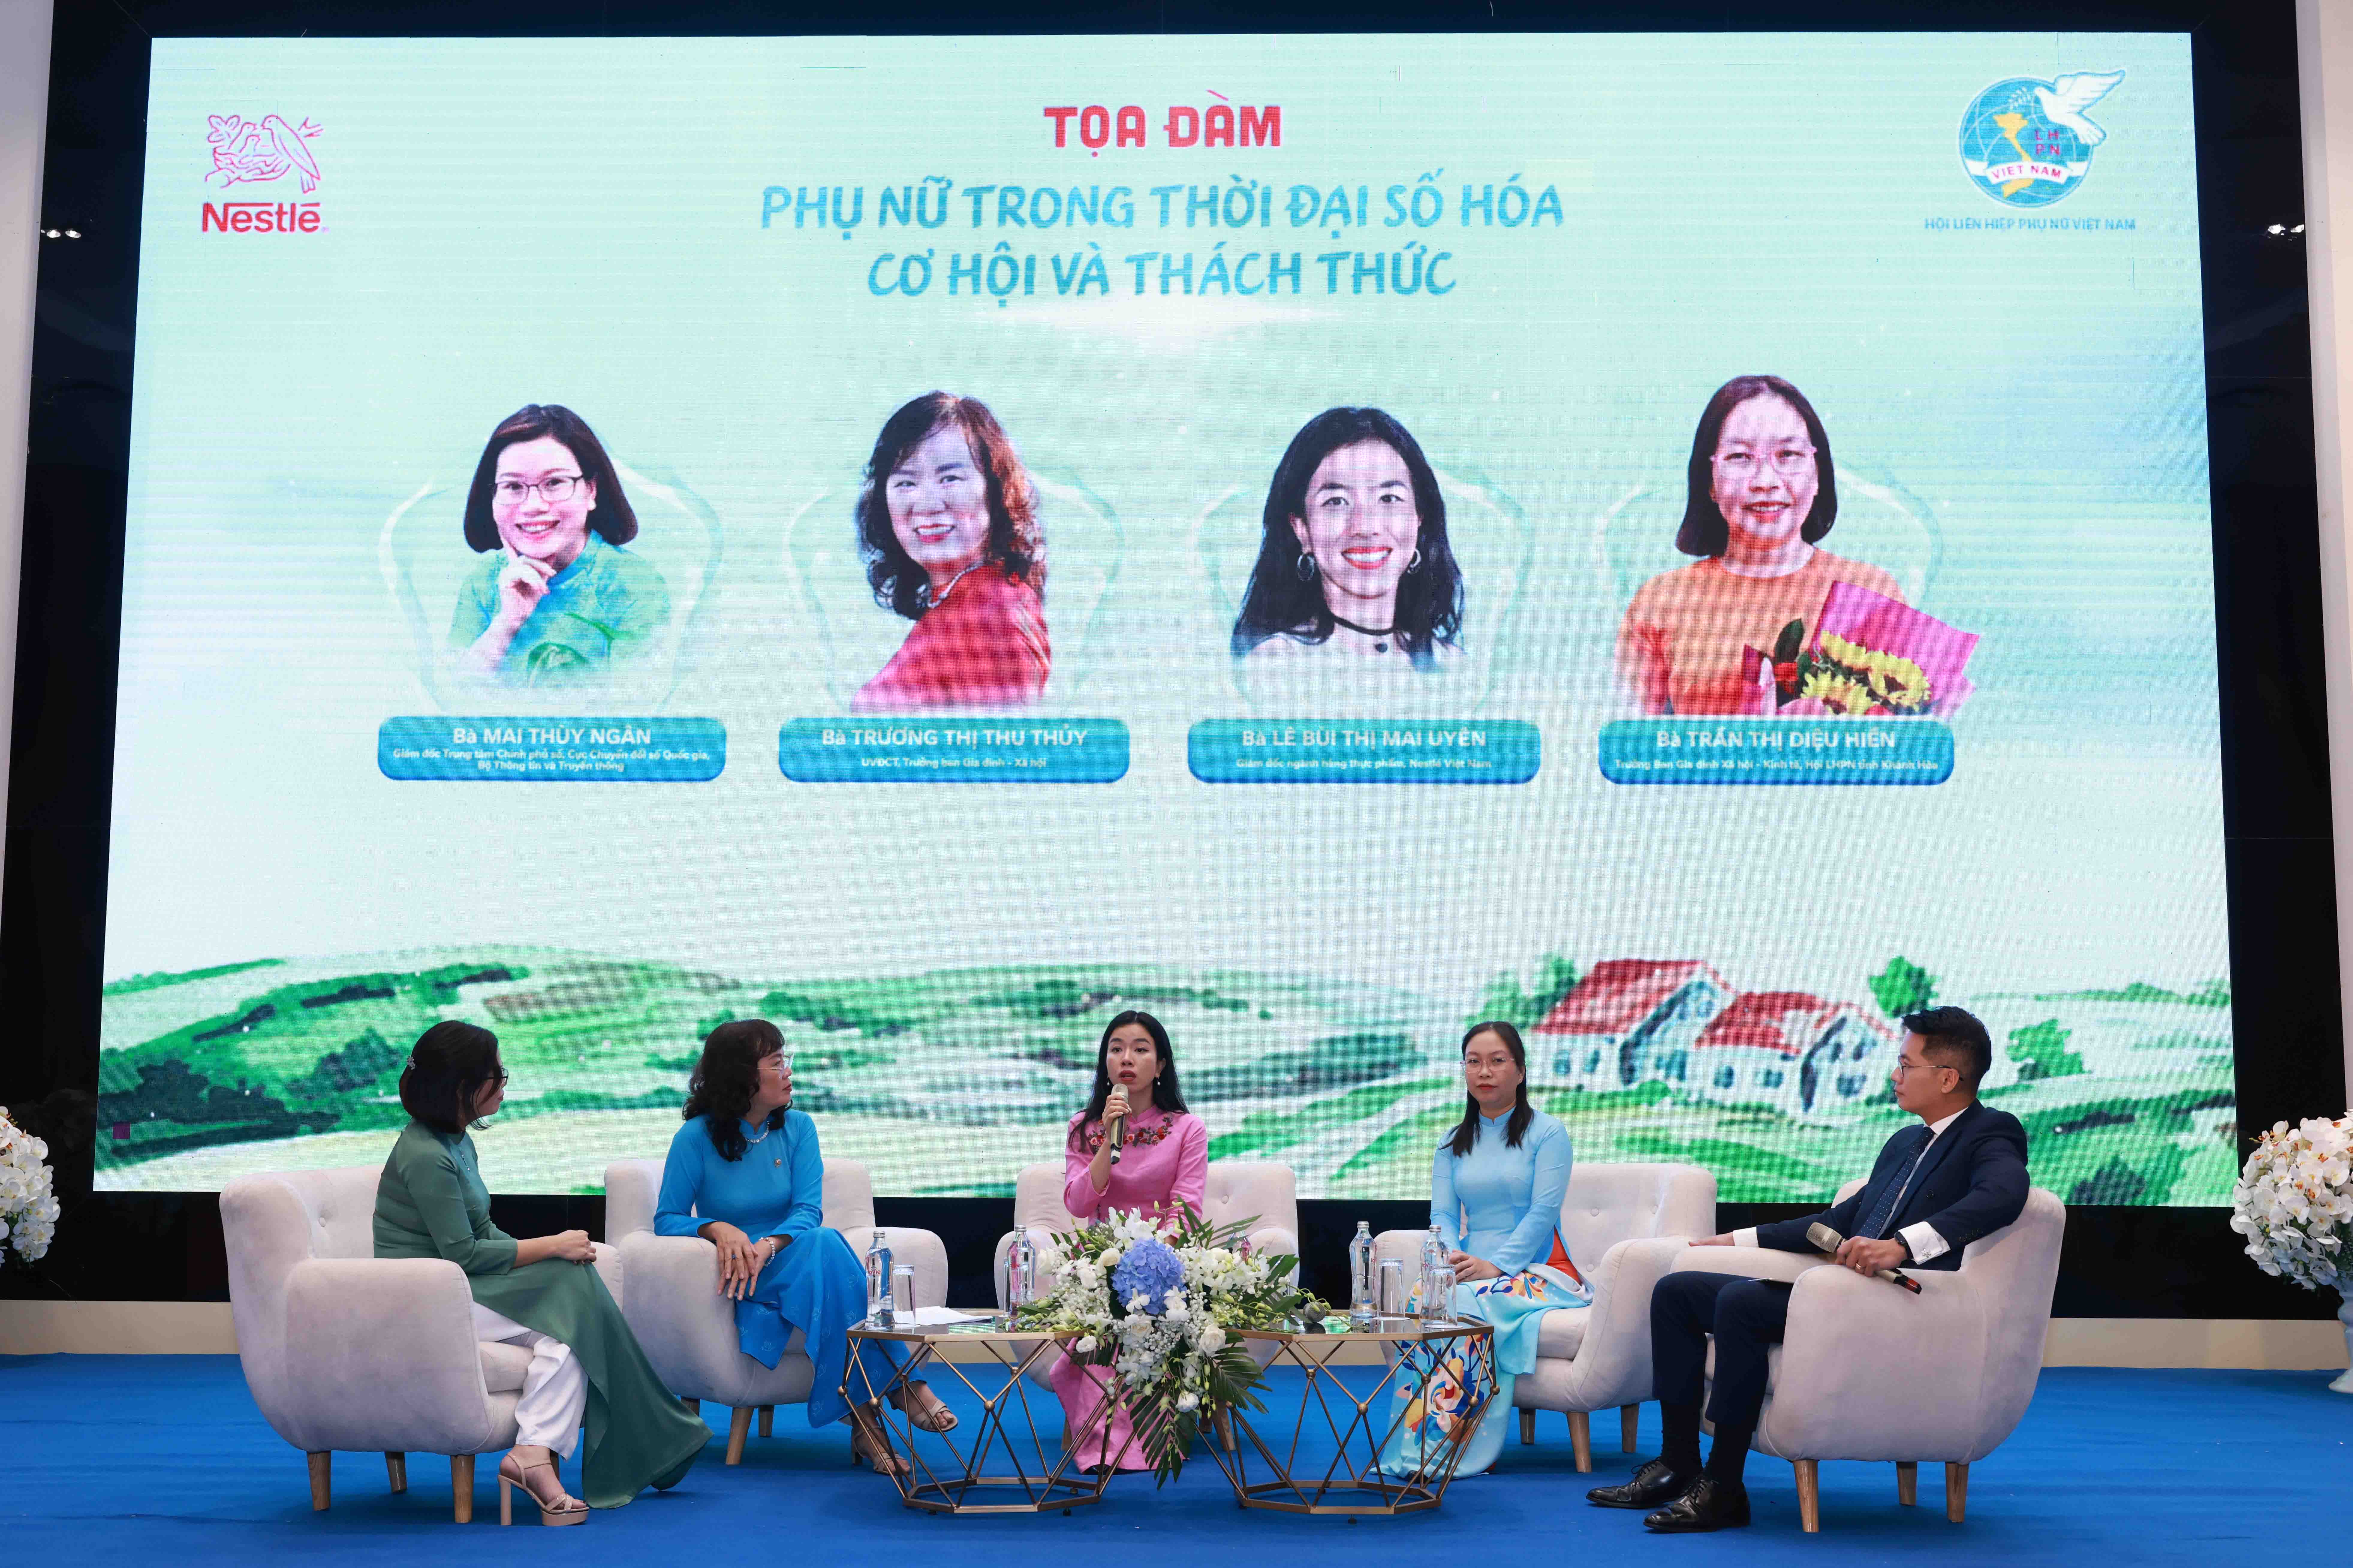 Cần biết - Nestlé Việt Nam và Hội Liên hiệp Phụ nữ Việt Nam thúc đẩy hợp tác góp phần hiện thực hóa mục tiêu về sức khỏe, kiến thức, sinh kế bền vững và chuyển đổi số (Hình 2).